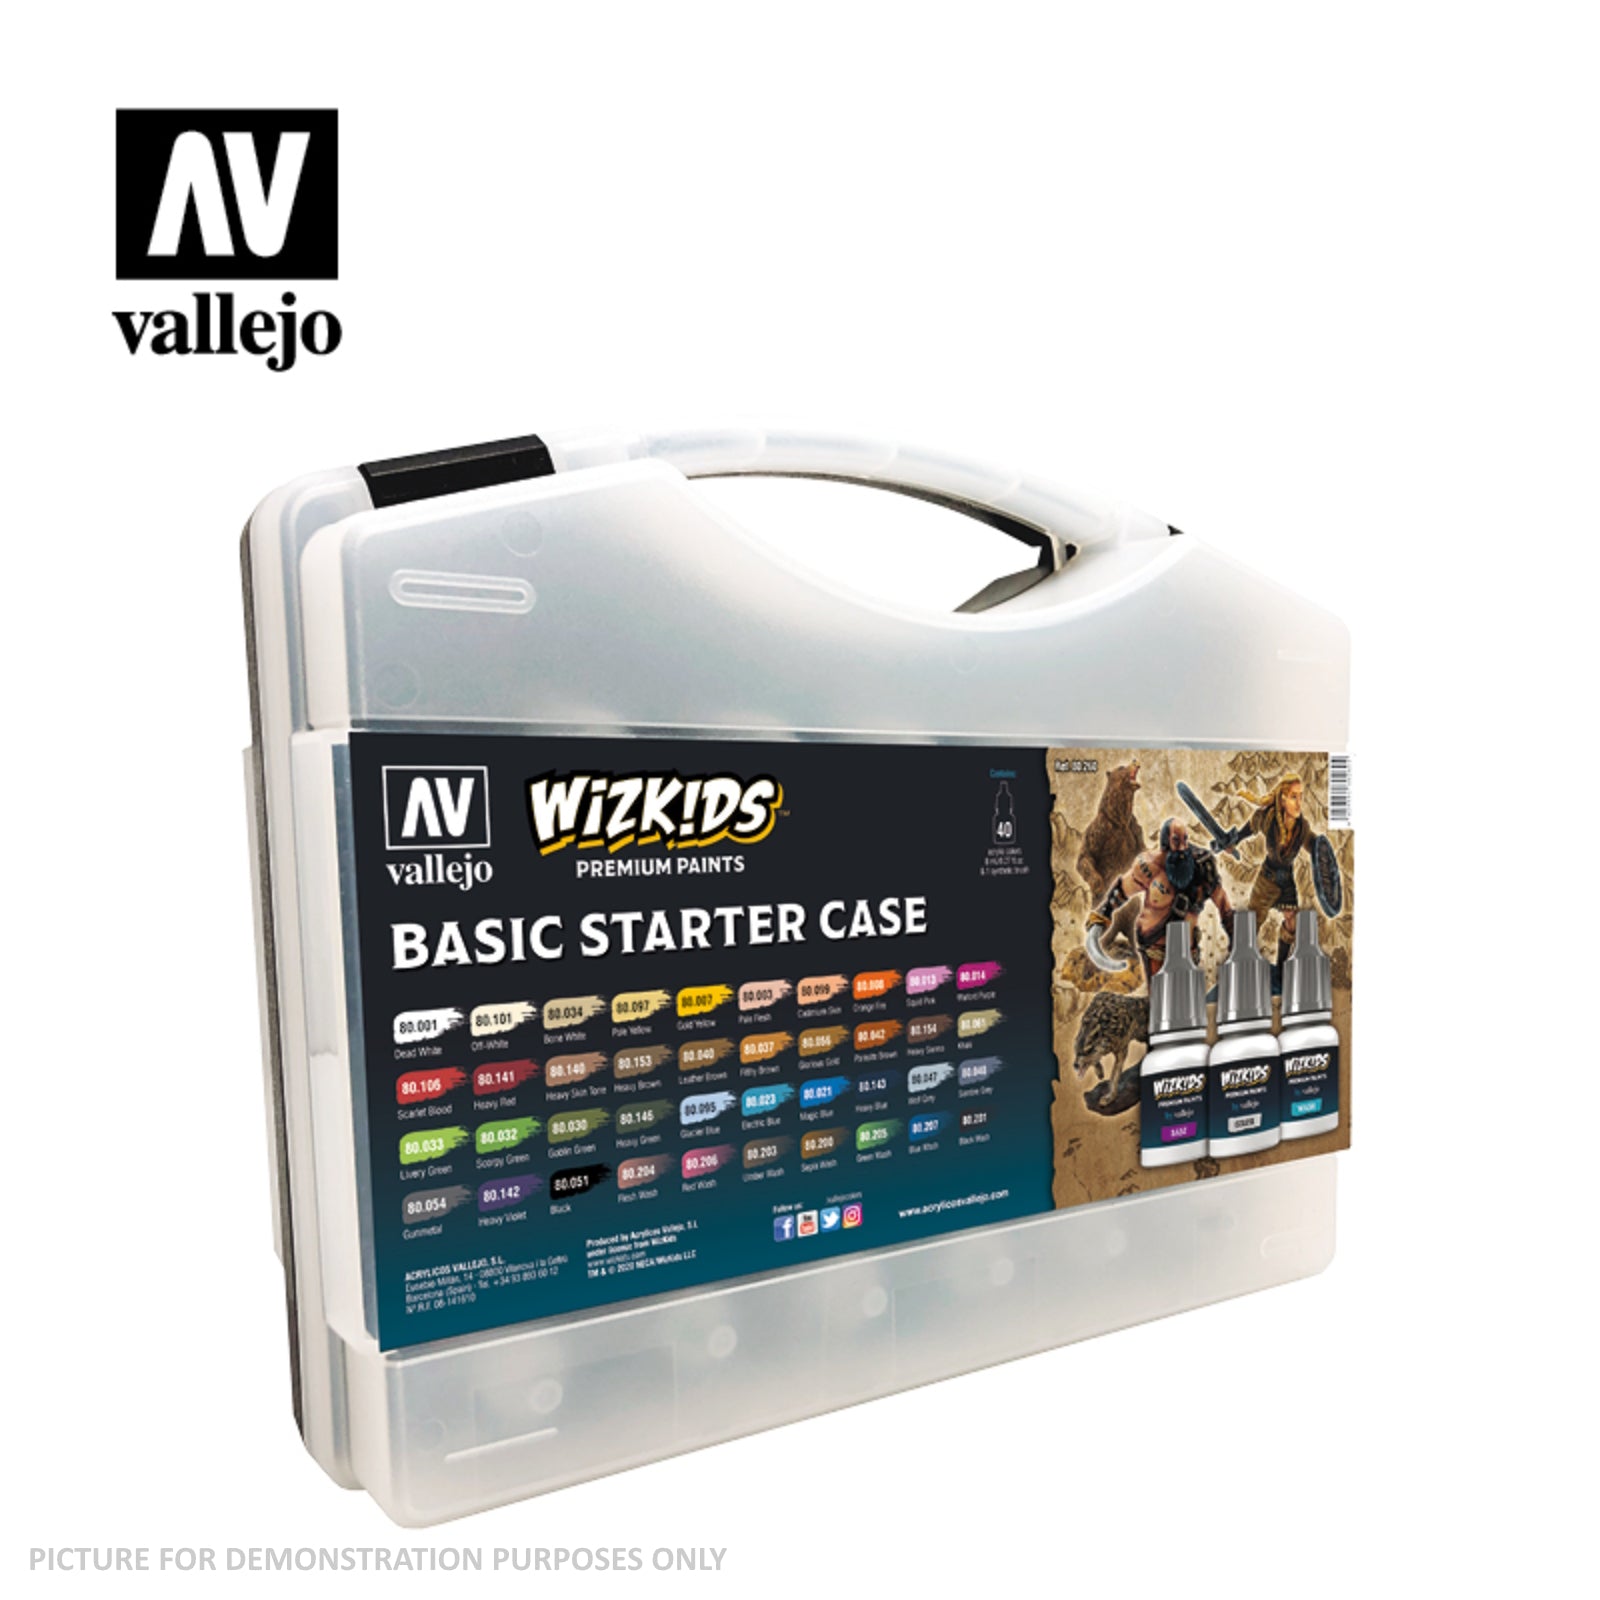 Wizkids Premium Paint Set by Vallejo - Basic Starter Case